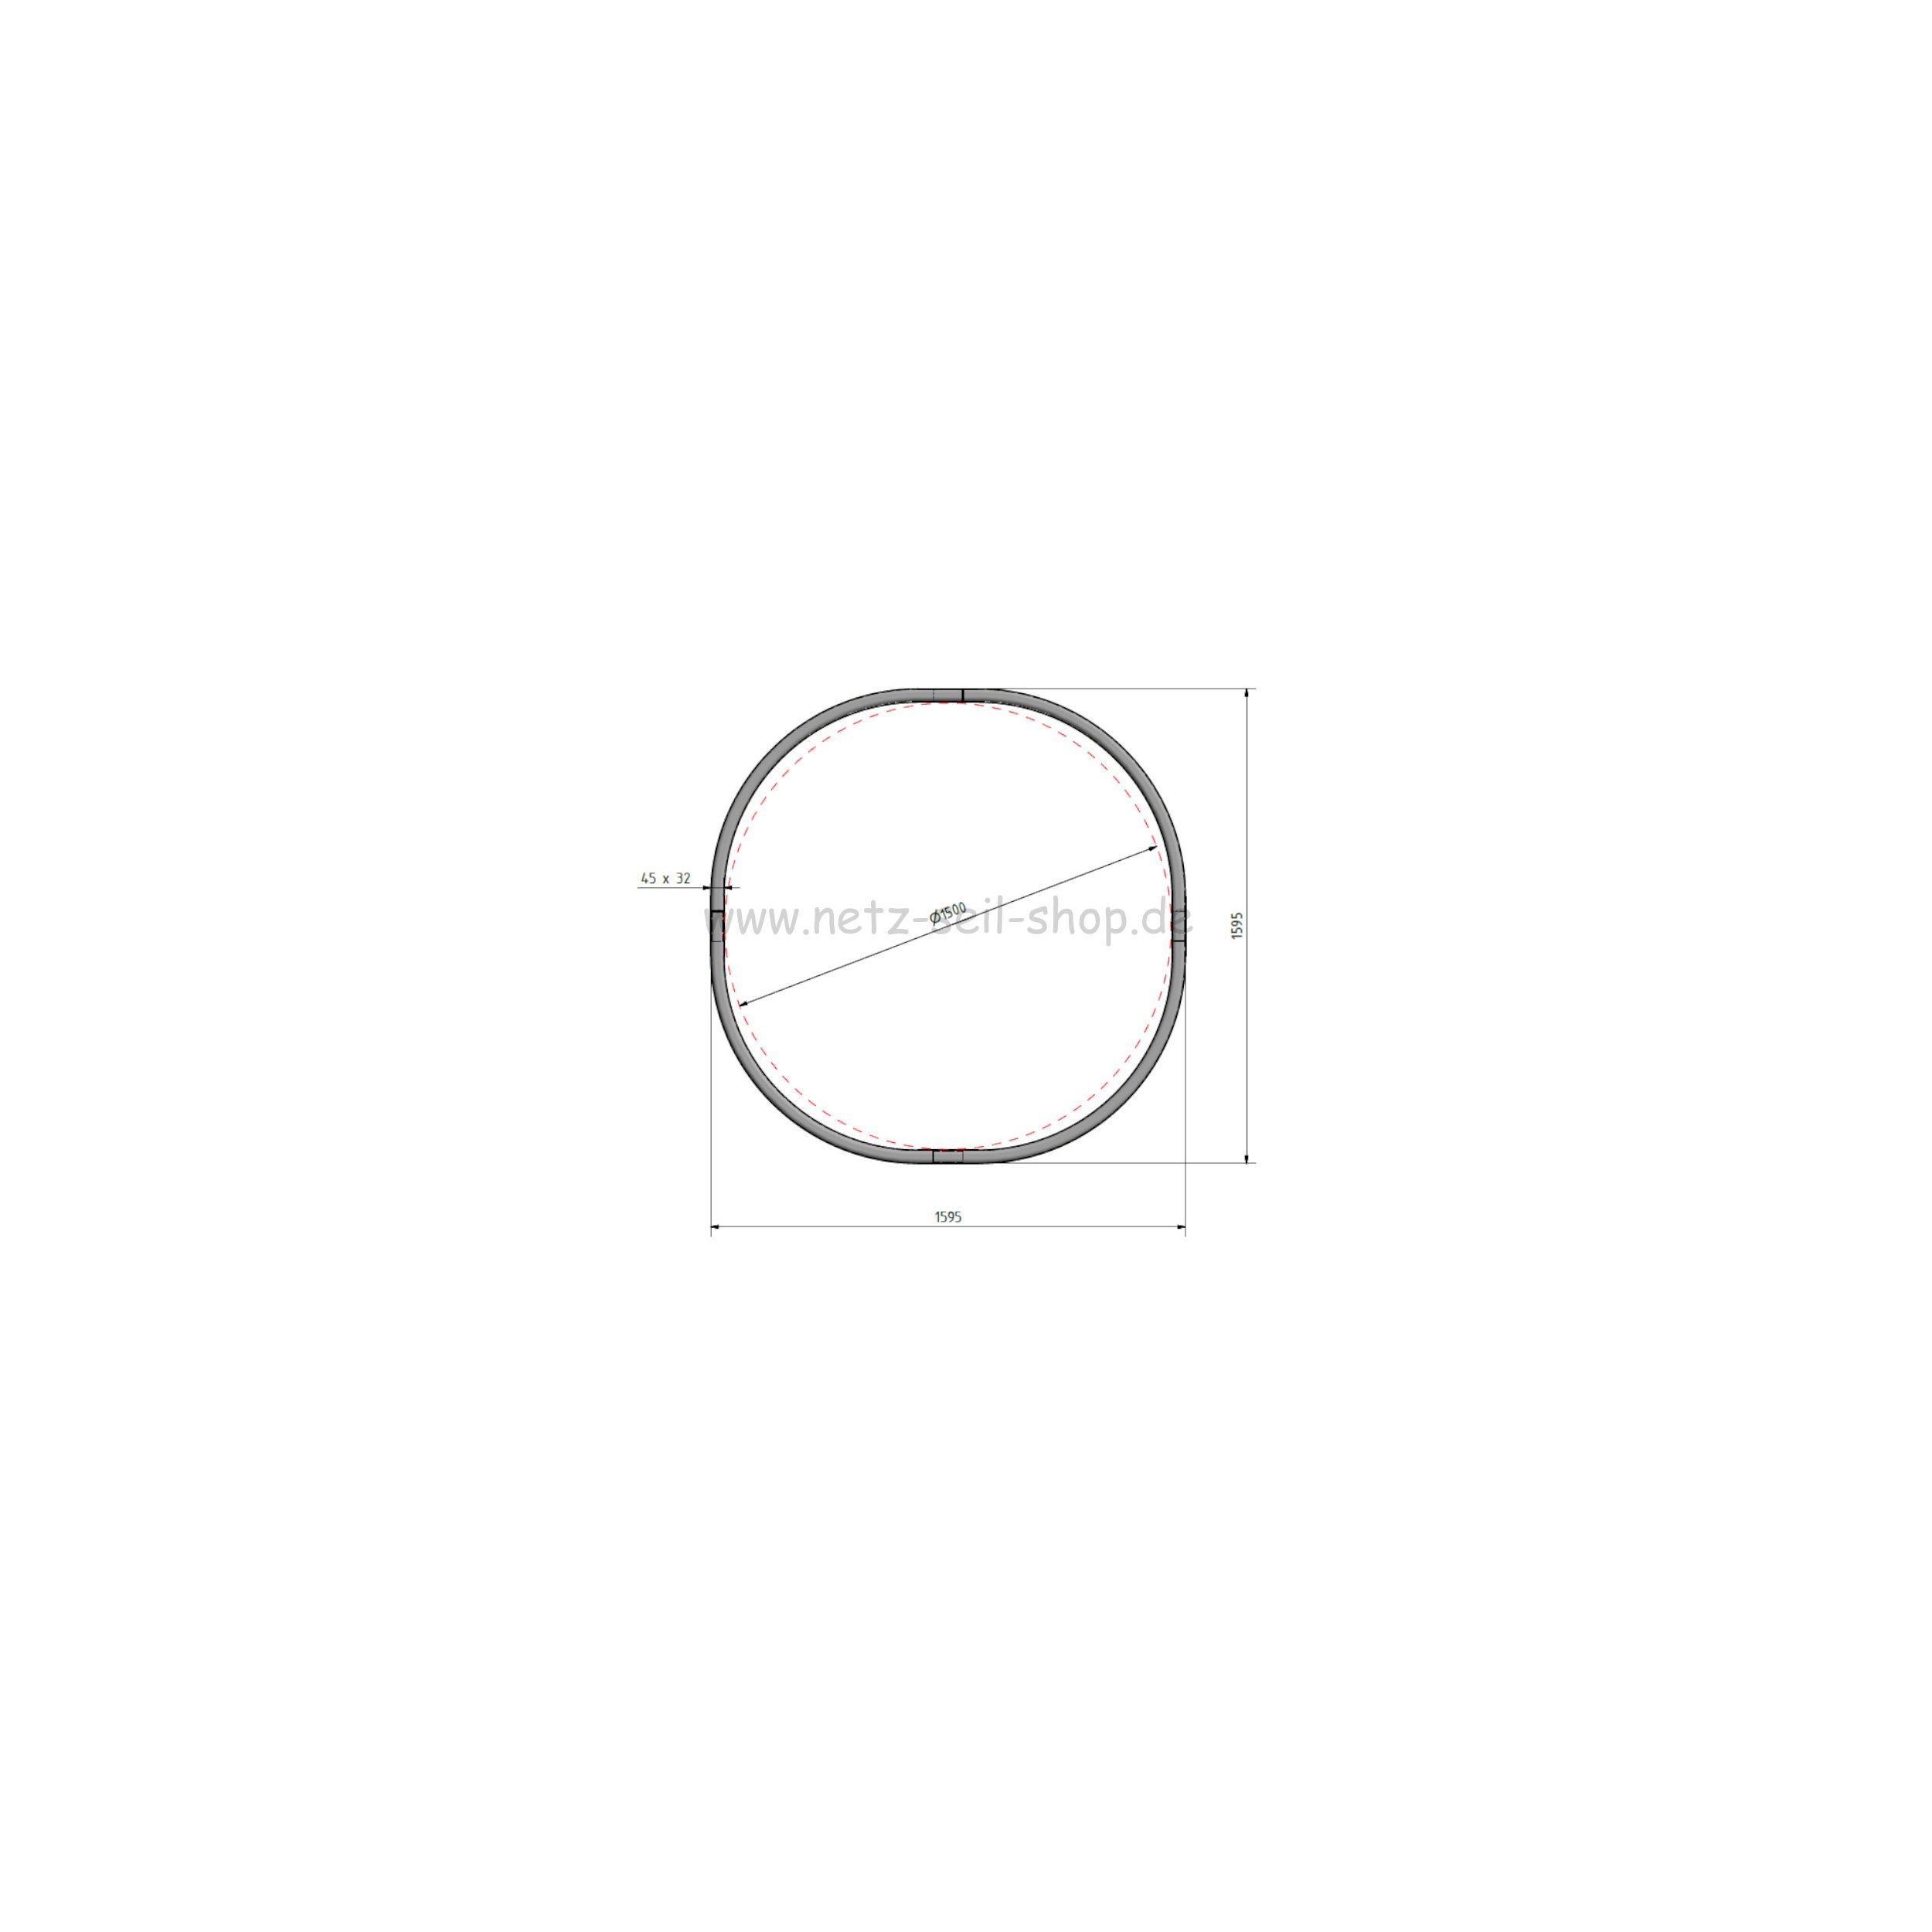 Heunetz für Rundballen, 180 cm Durchmesser, Höhe 120cm,  Ø 5 mm Garn, # 80 mm Maschenweite ohne Ring